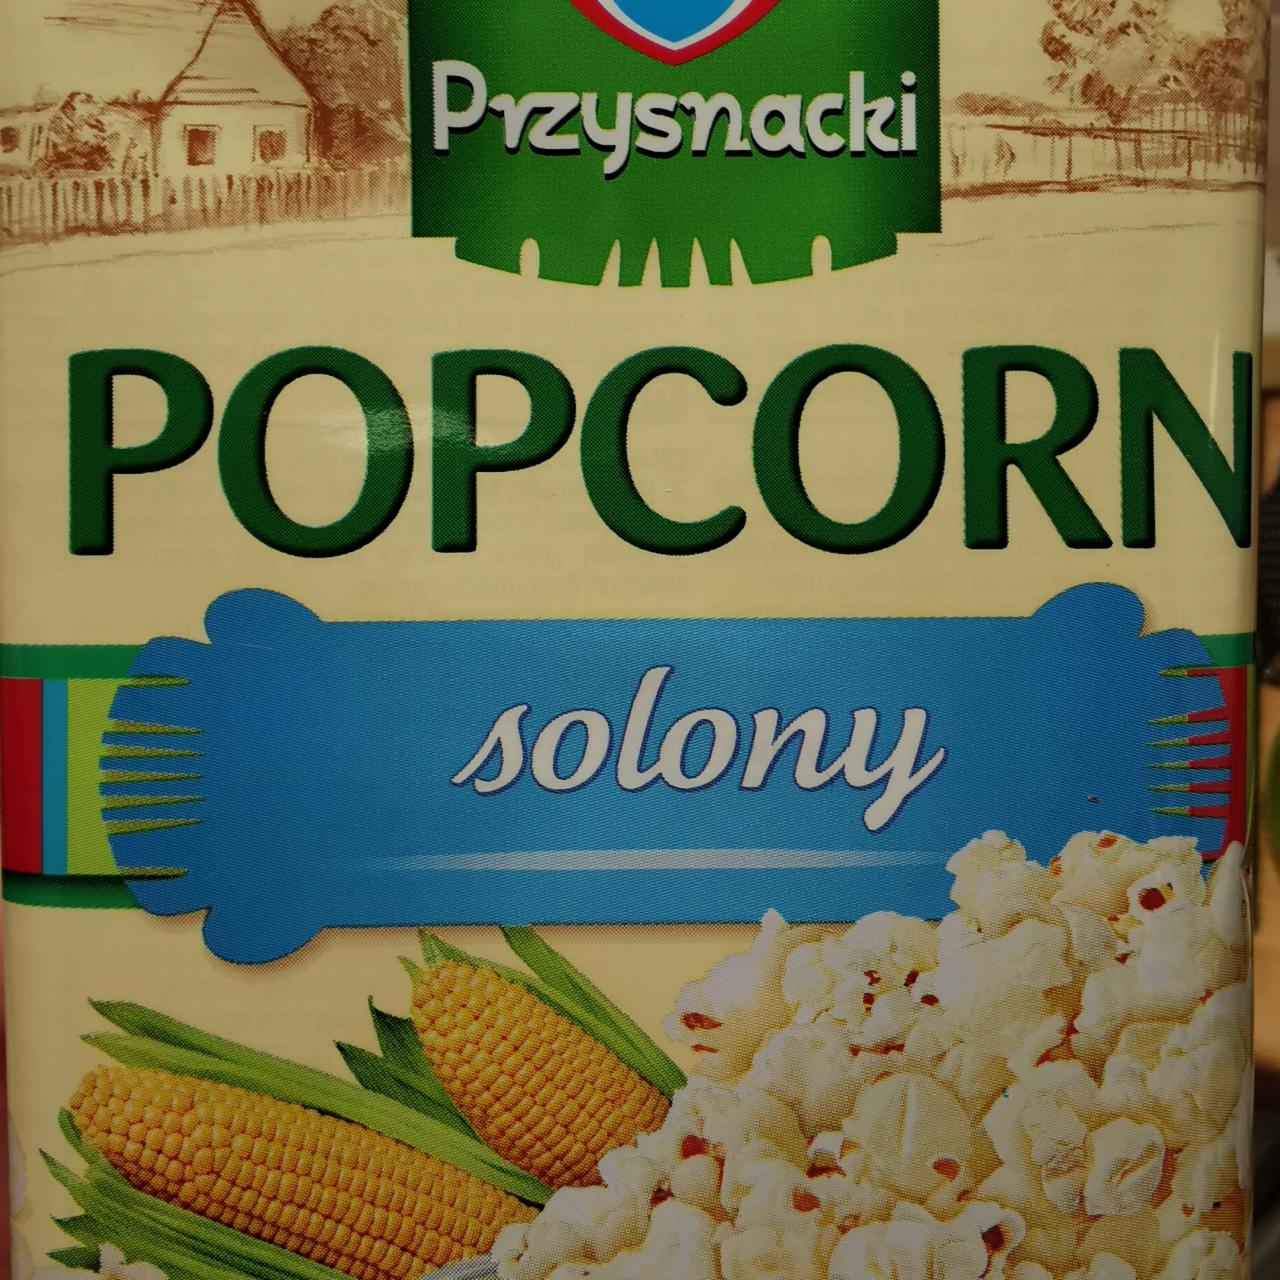 Fotografie - Popcorn Solony Przysnacki